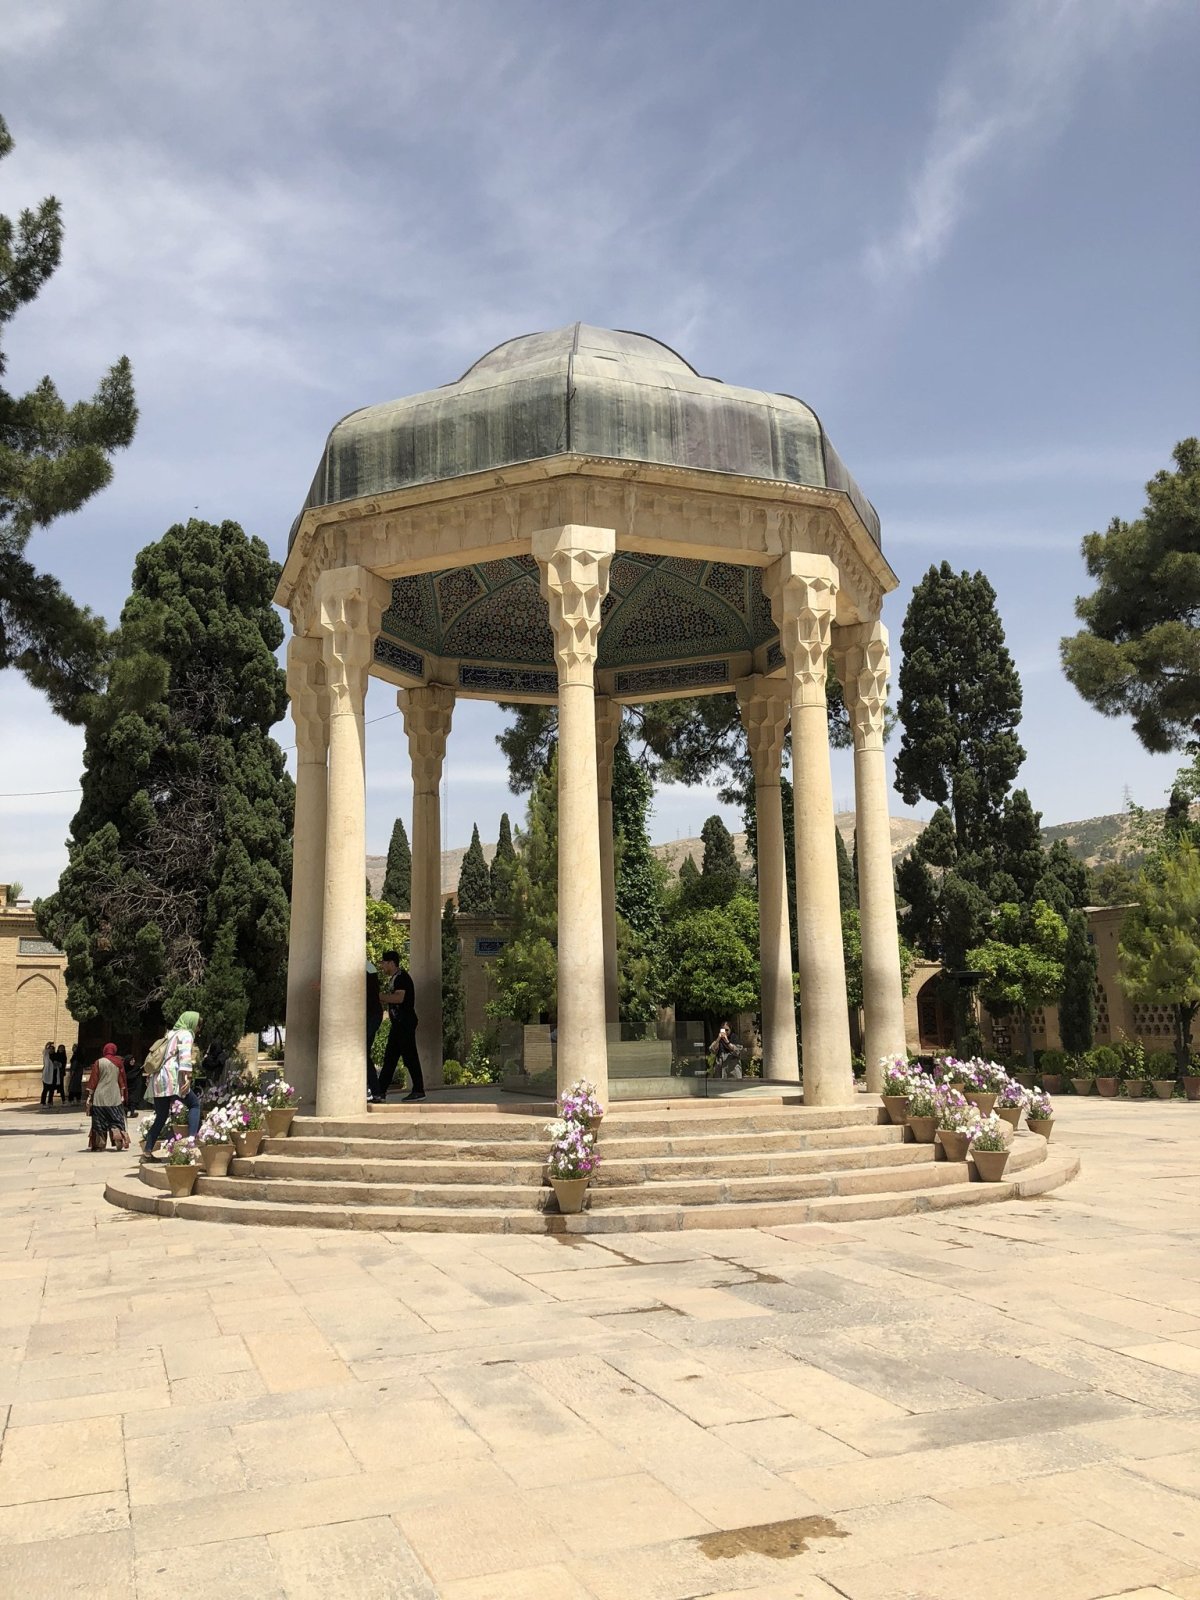 Hrobka básníka Hafeze. Jeho náhrobní kámen je uprostřed výklenku. Íránci na něj často pokládají květiny.